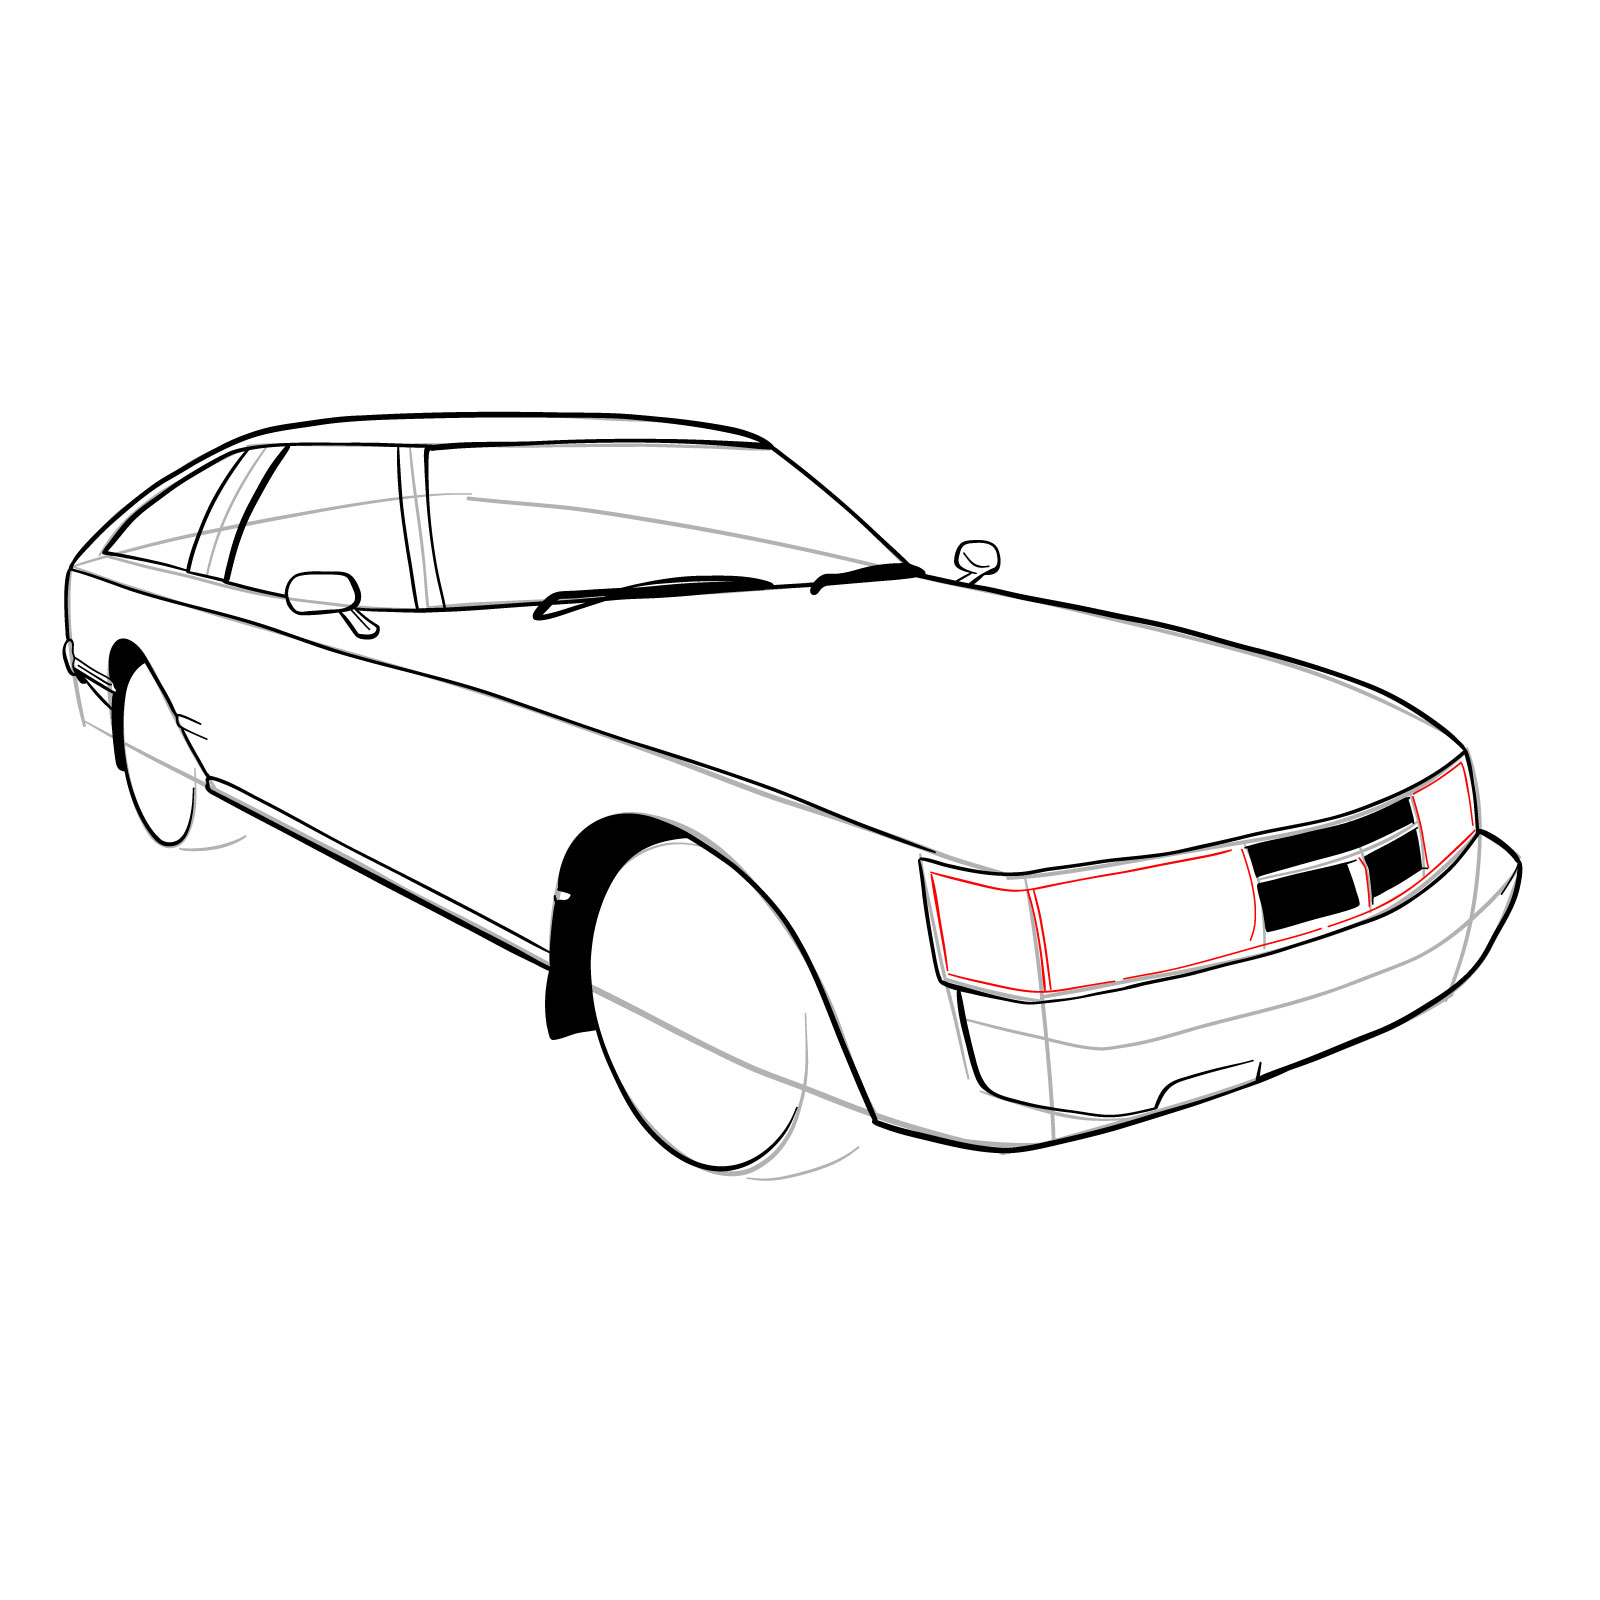 How to draw a 1979 Toyota Celica Supra Mk I Coupe - step 20